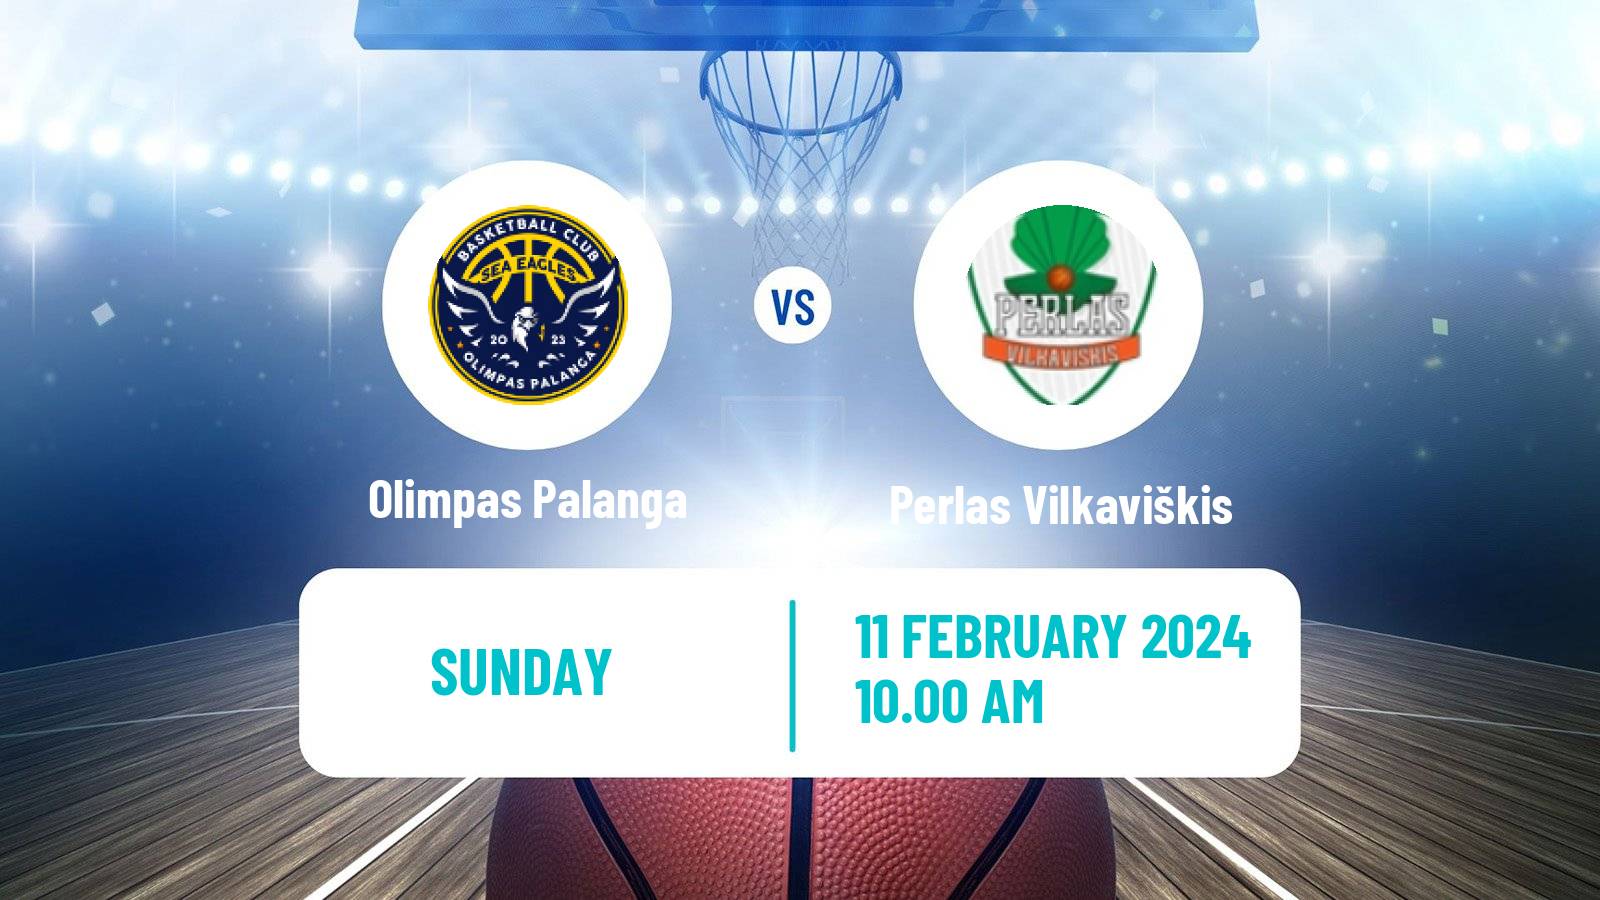 Basketball Lietuvos NKL Olimpas Palanga - Perlas Vilkaviškis